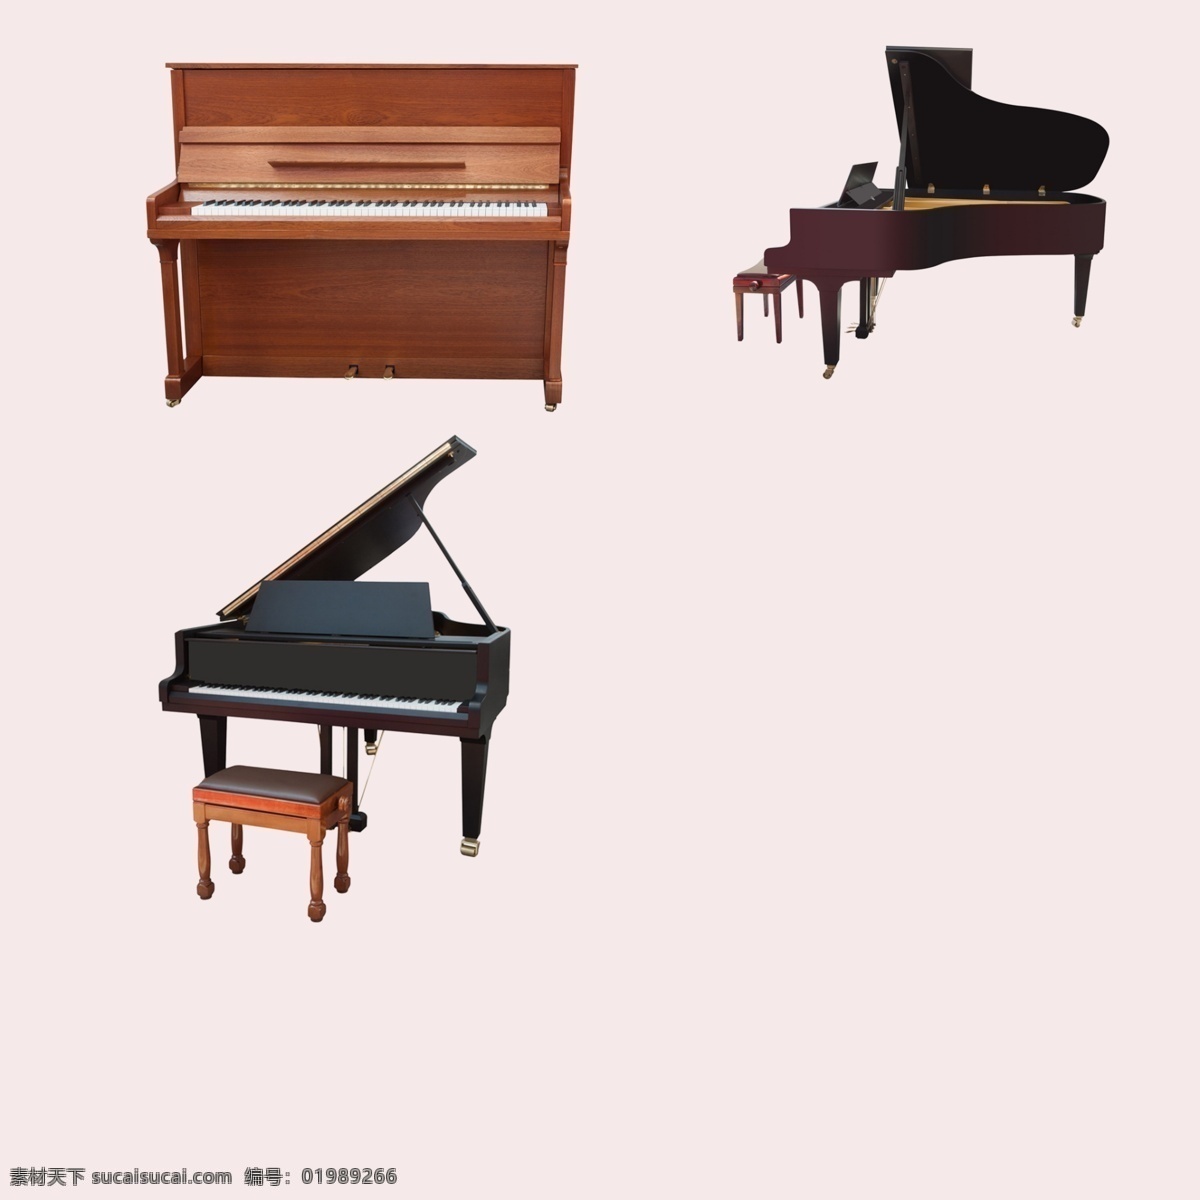 钢琴 黑色钢琴 钢琴素材 音乐素材 休闲娱乐 电子产品 生活百科 白色